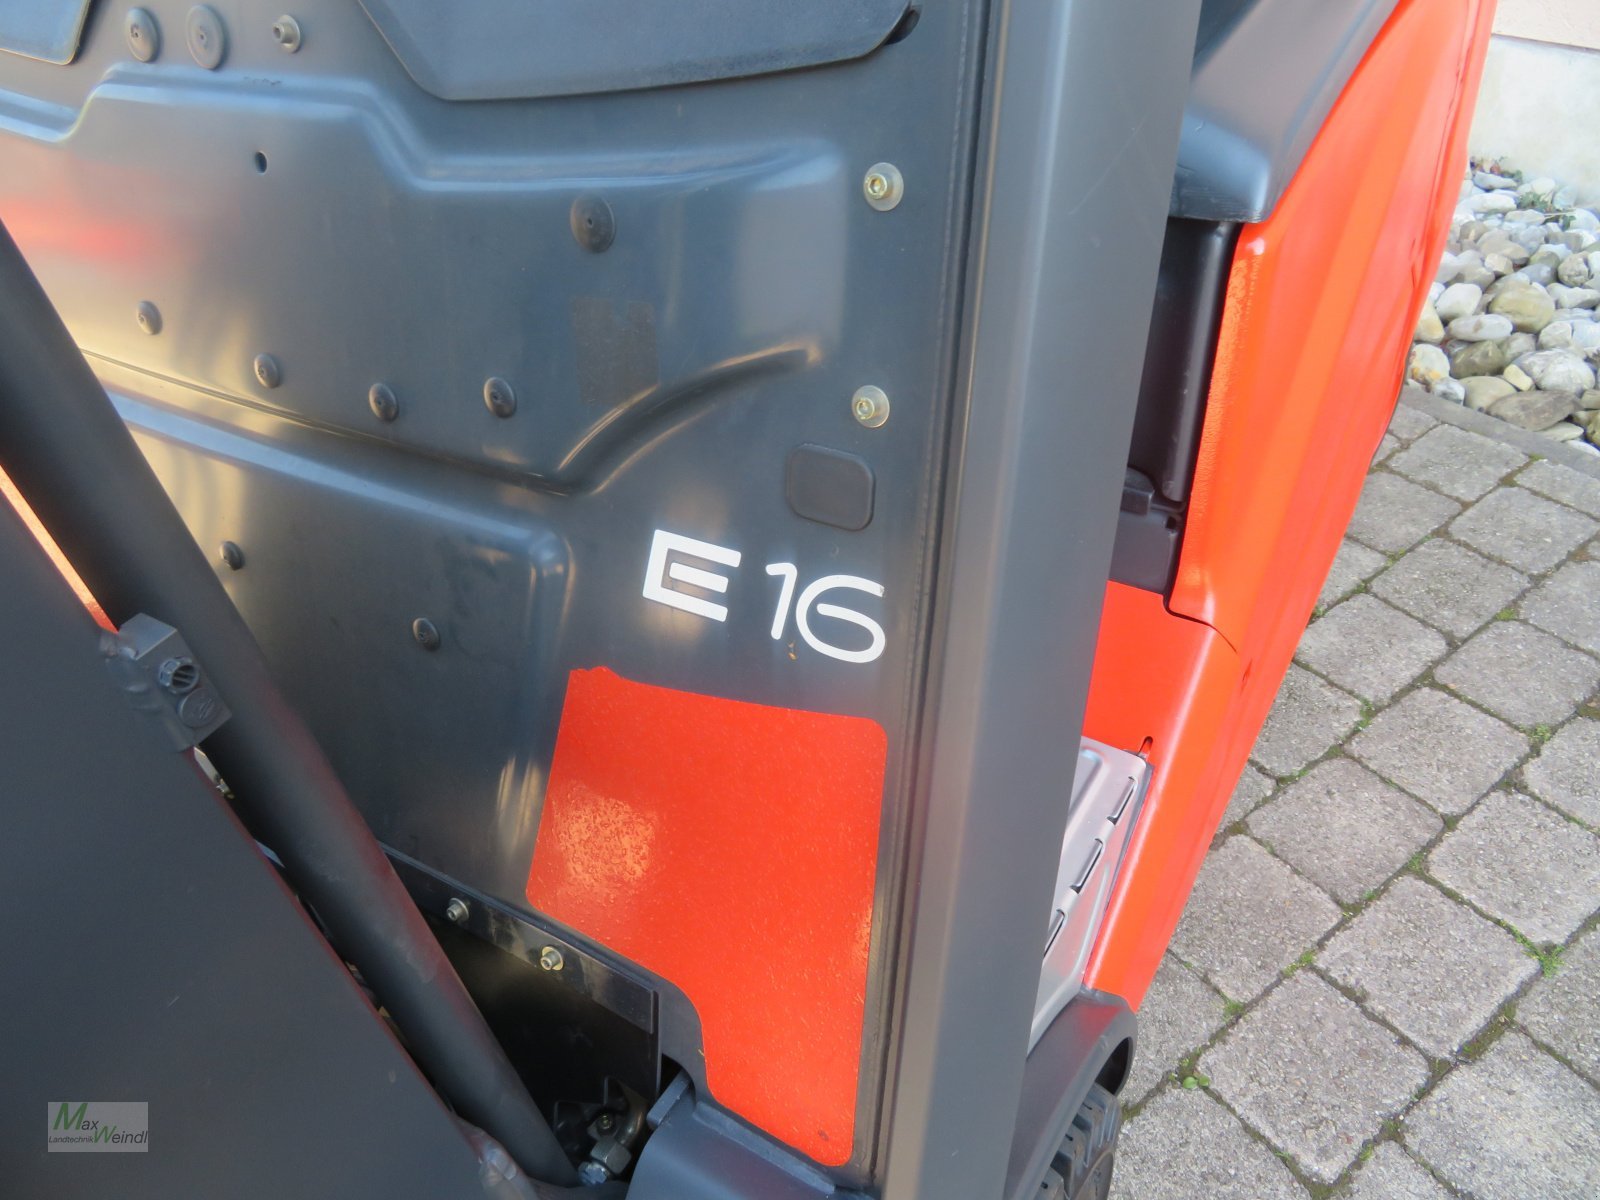 Elektrostapler типа Linde E 16, Gebrauchtmaschine в Markt Schwaben (Фотография 5)